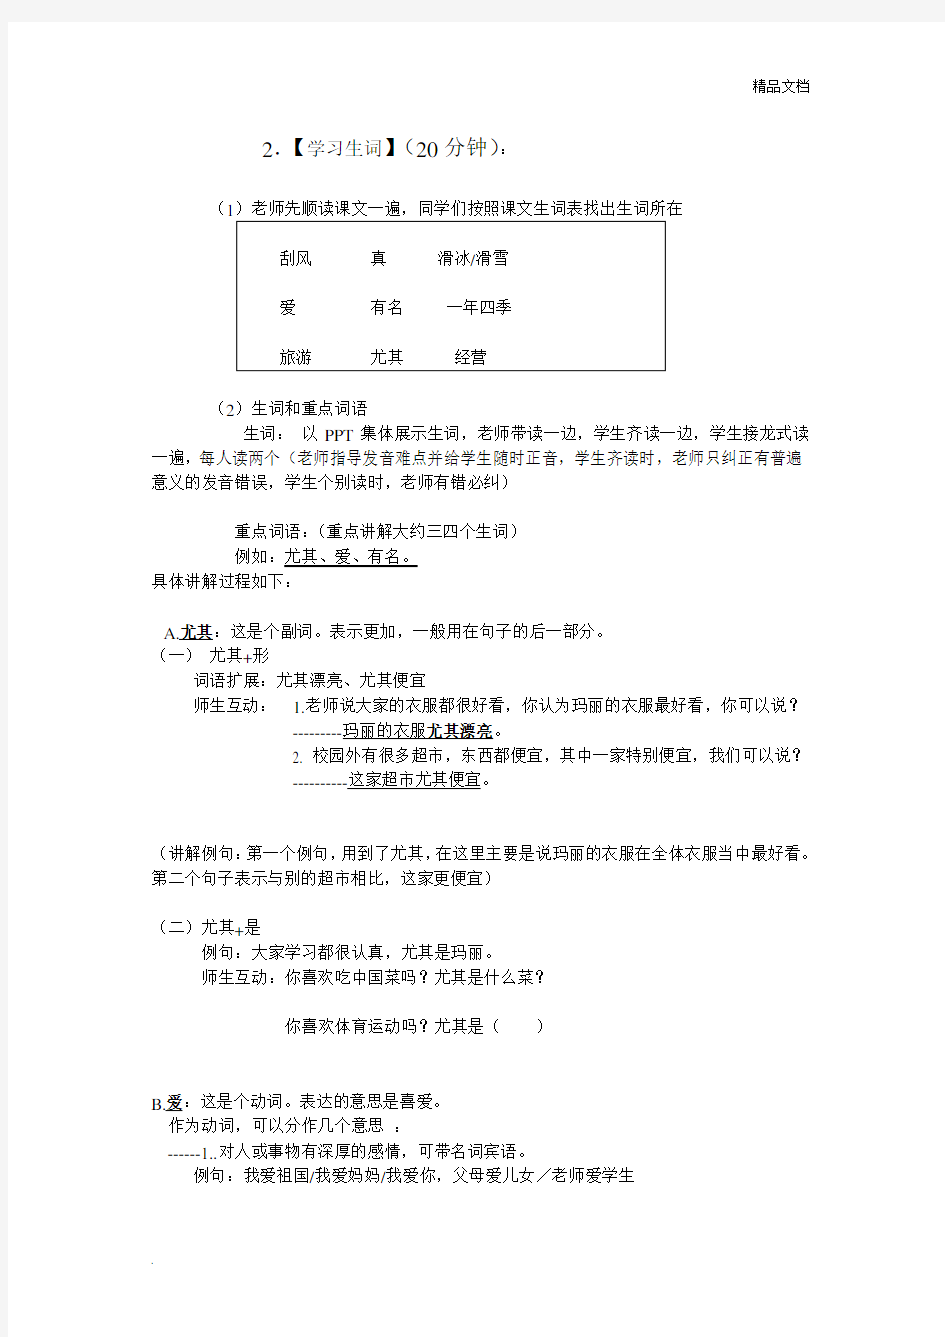 对外汉语综合课教案(初级)